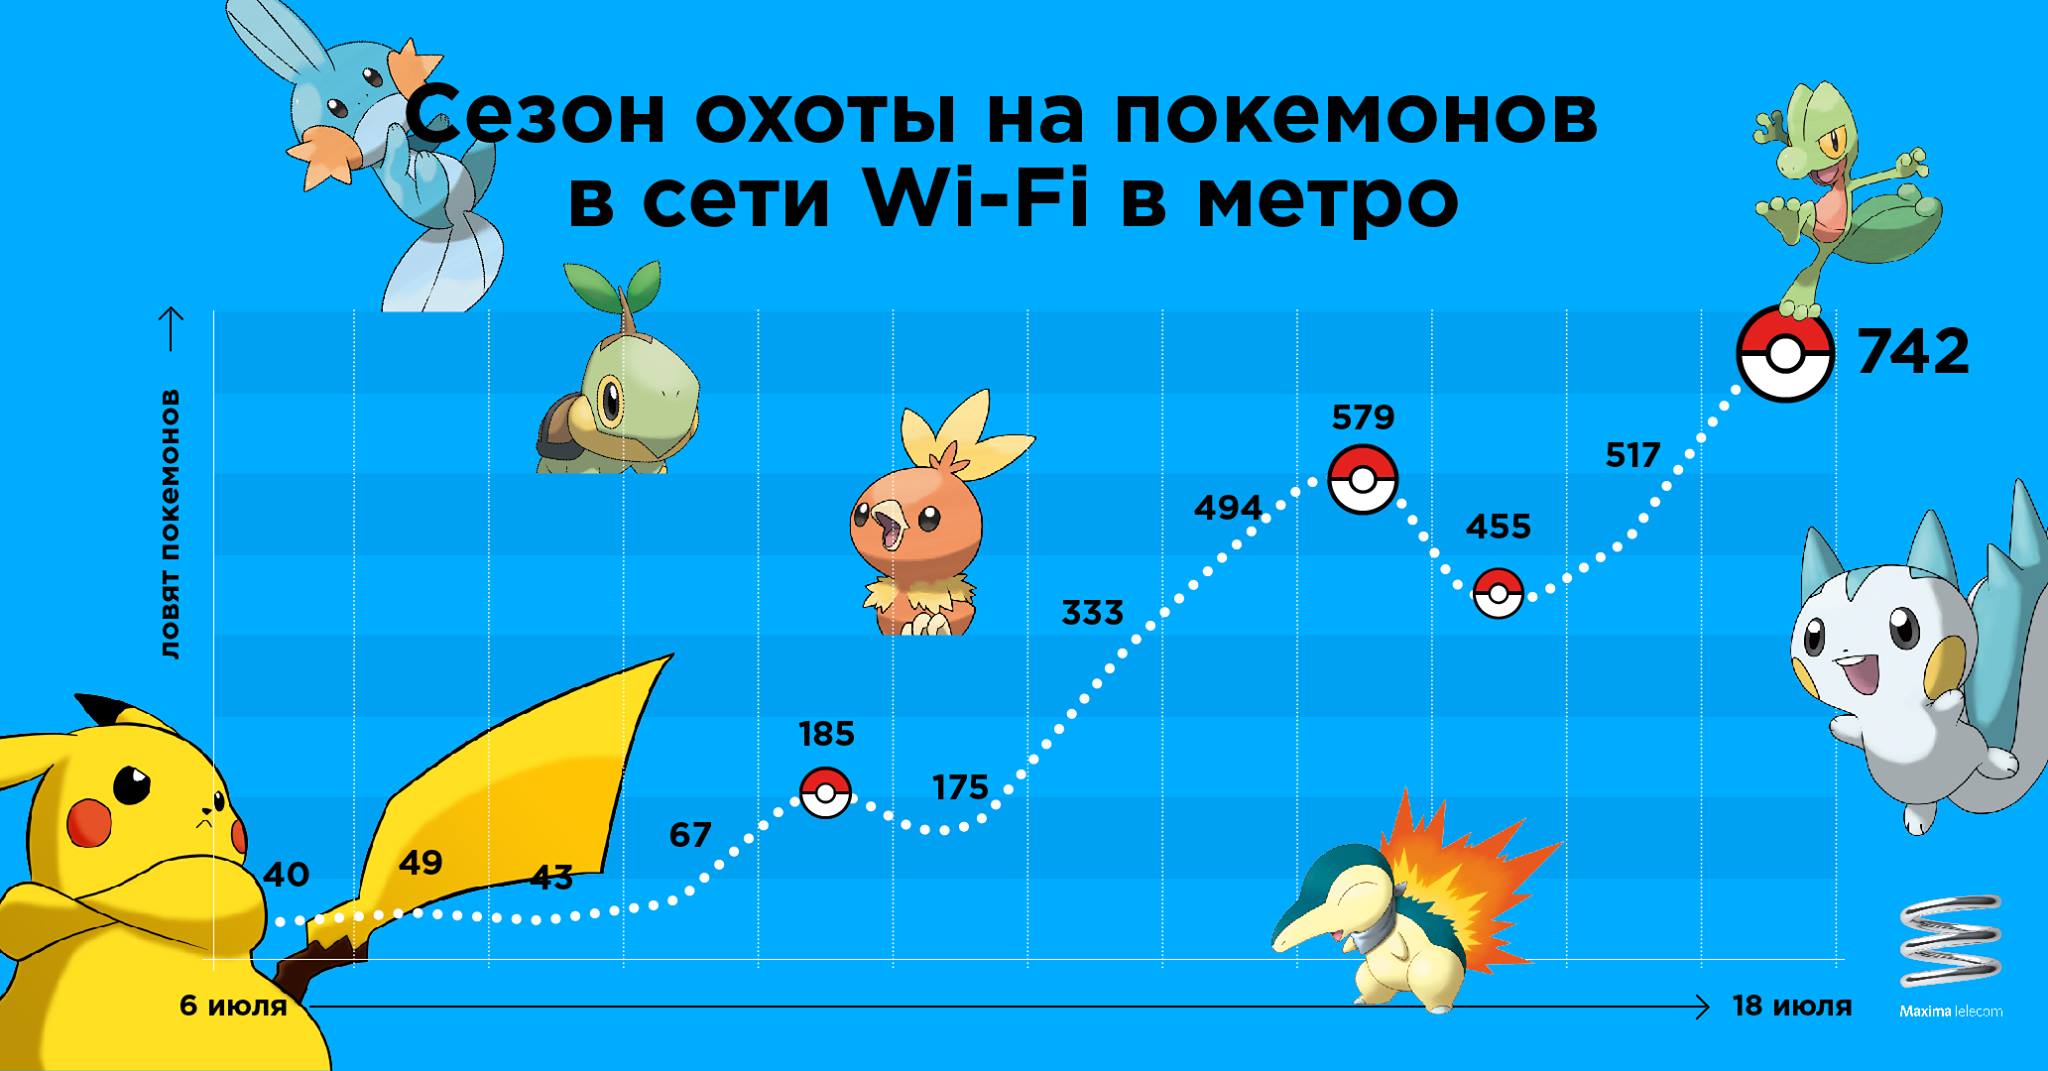 Цифра дня: Сколько человек ловят покемонов в московском метро ежедневно? 